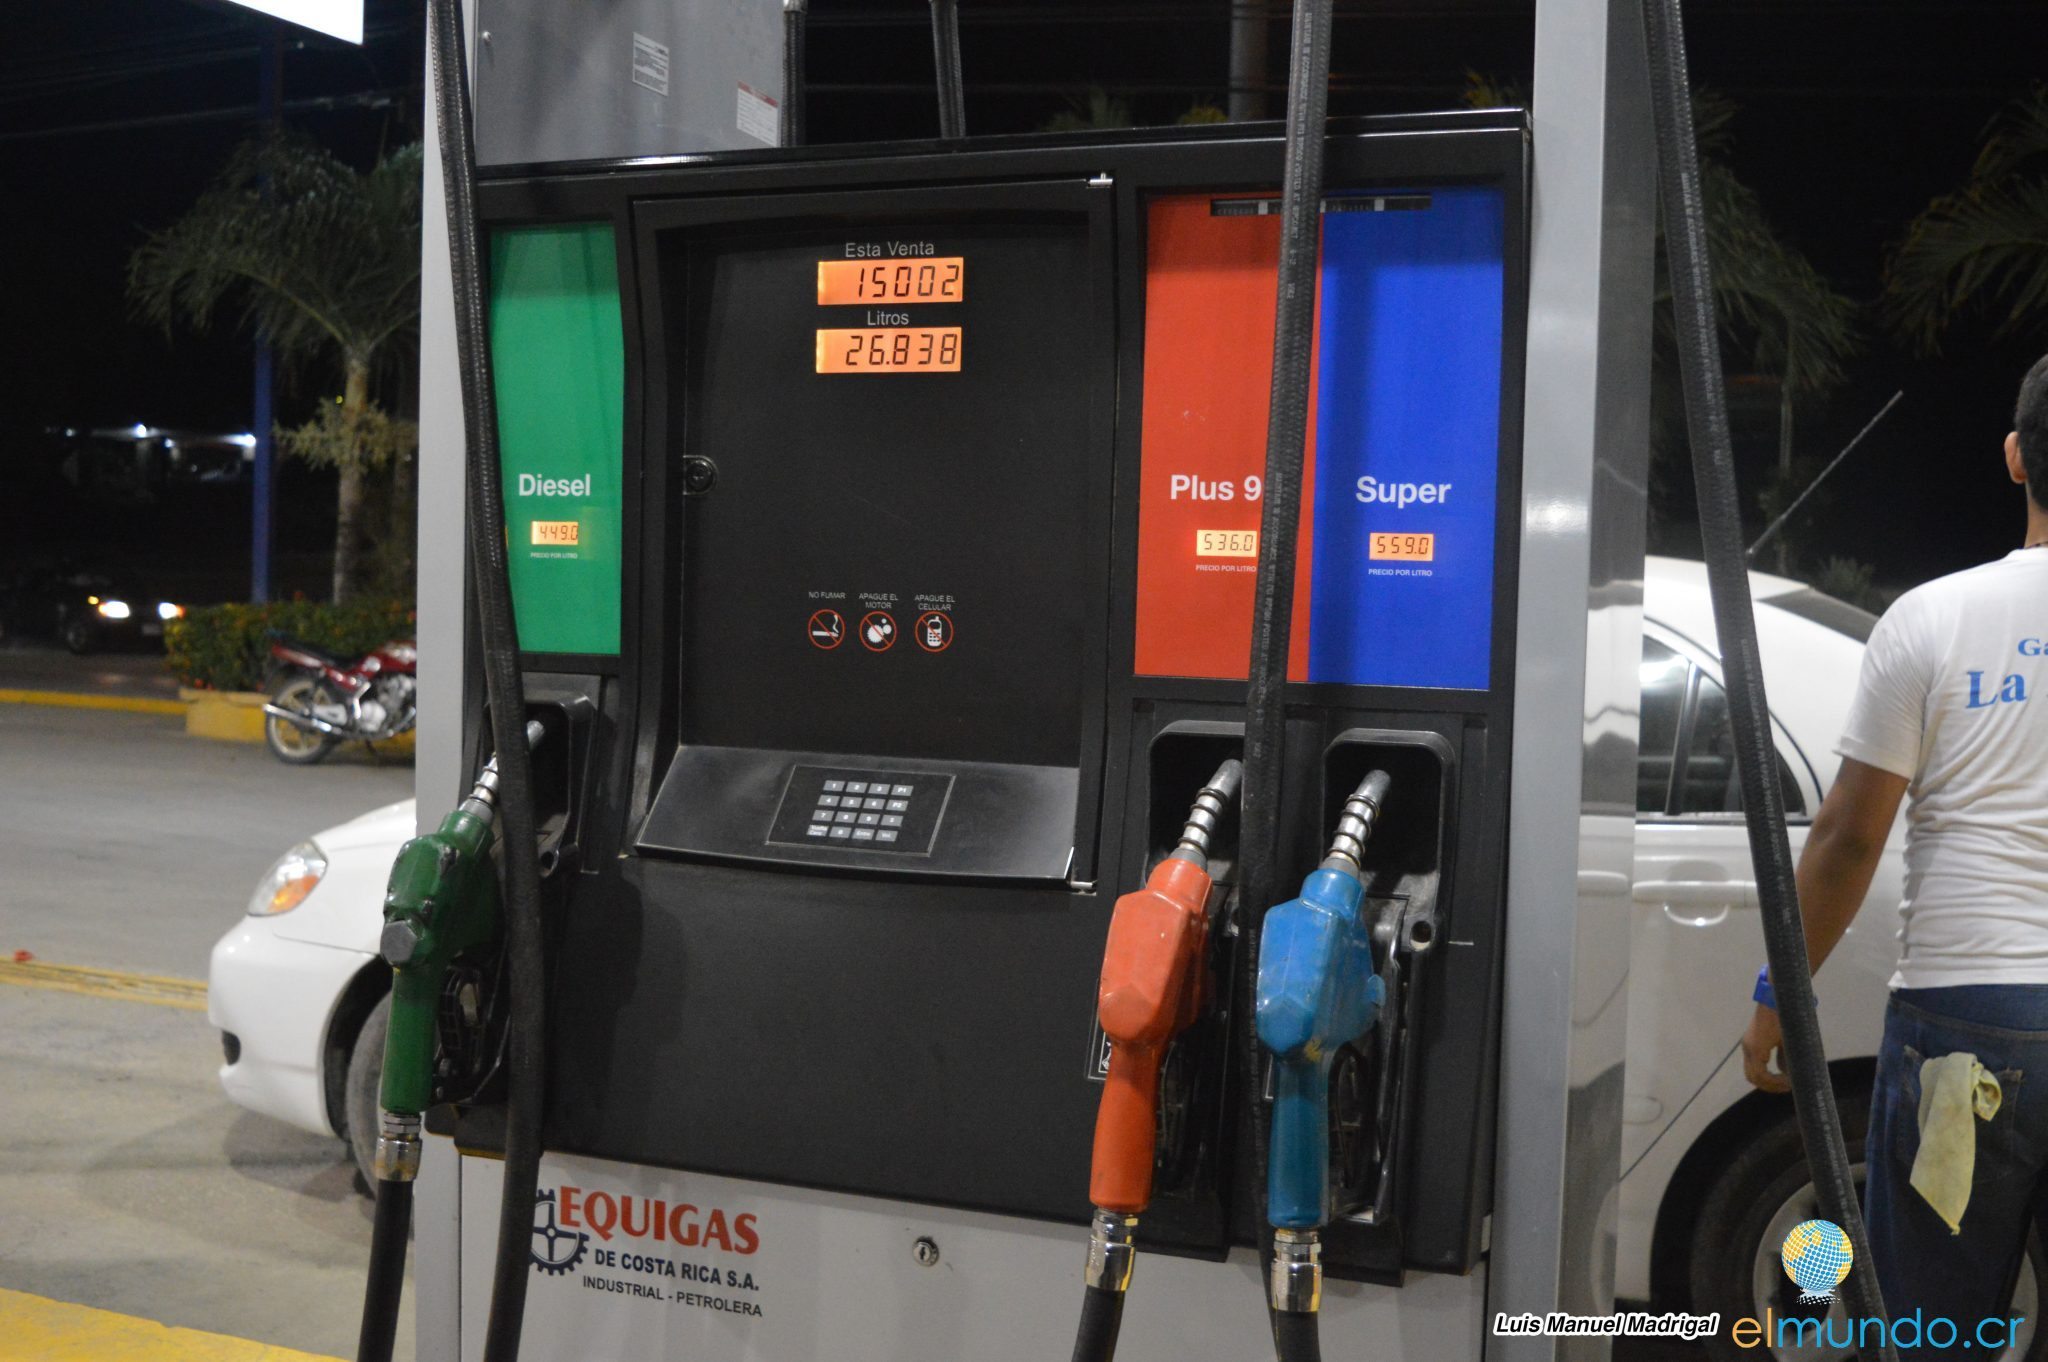 Aresep aprueba rebaja en gasolinas de hasta ¢16 por litro y aumento en diésel